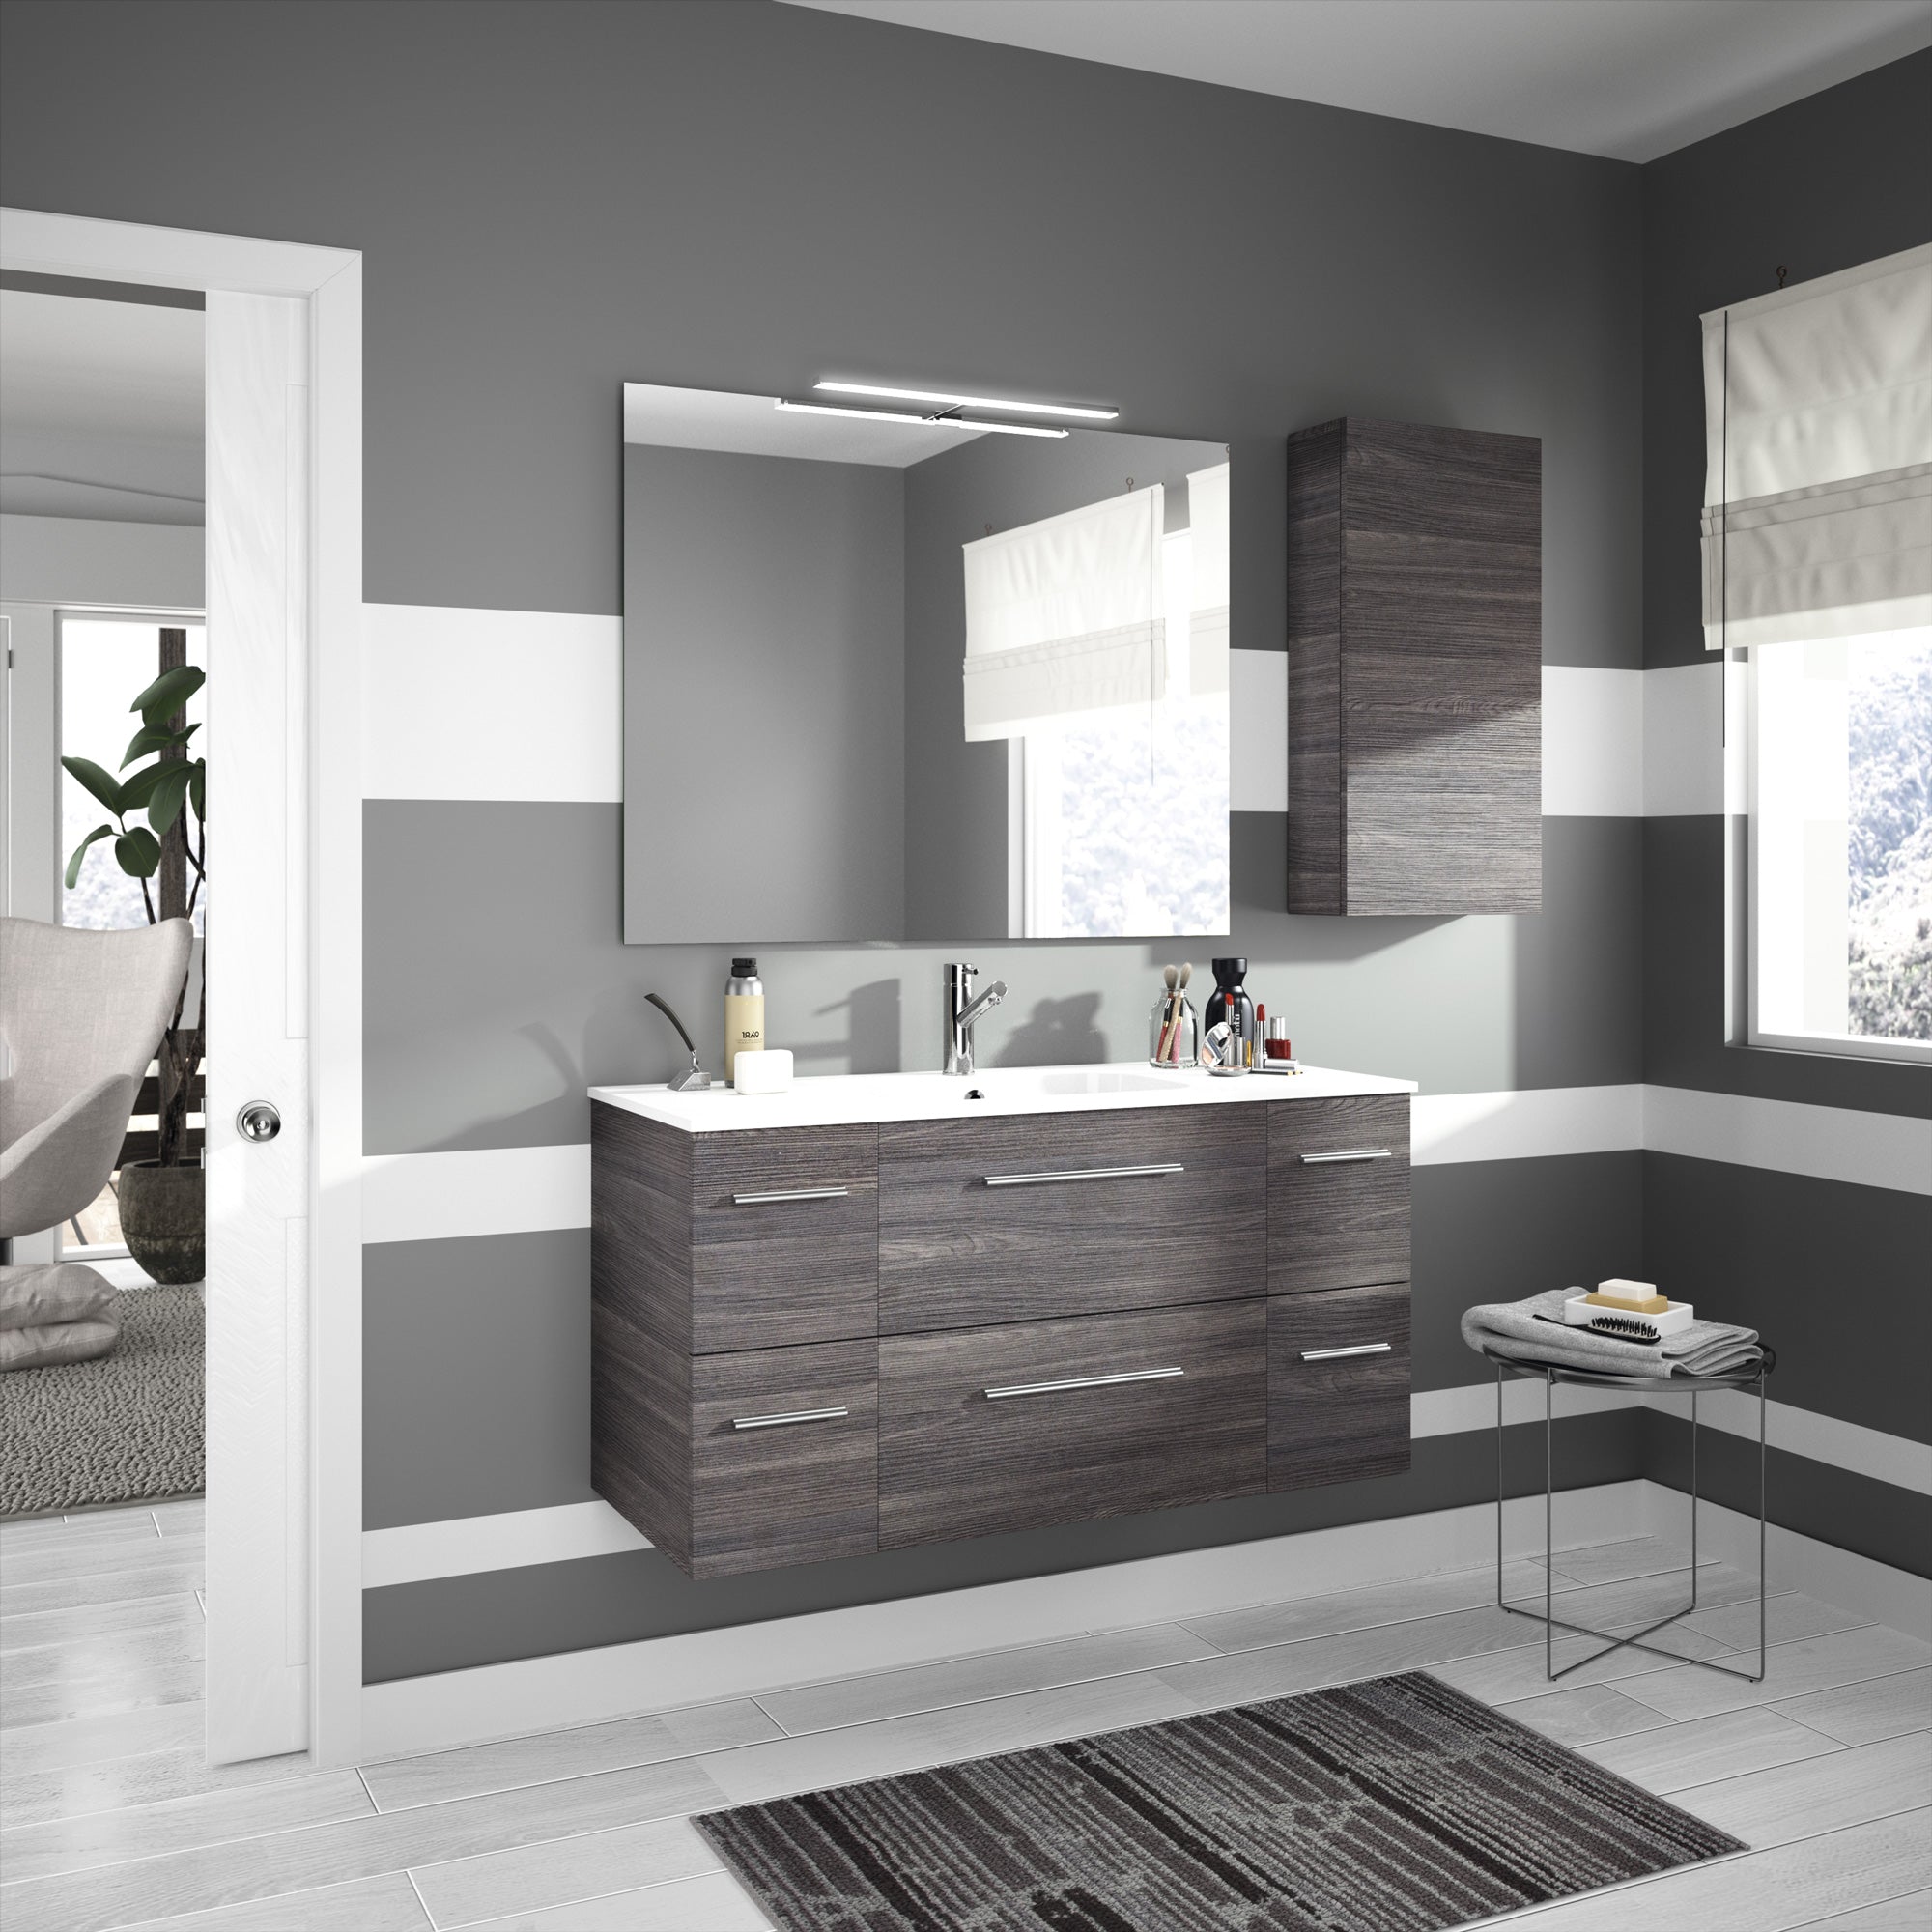 Fussion Chrome Bathroom Cabinet 16 X 32 Inches Alsacia Brickellkb